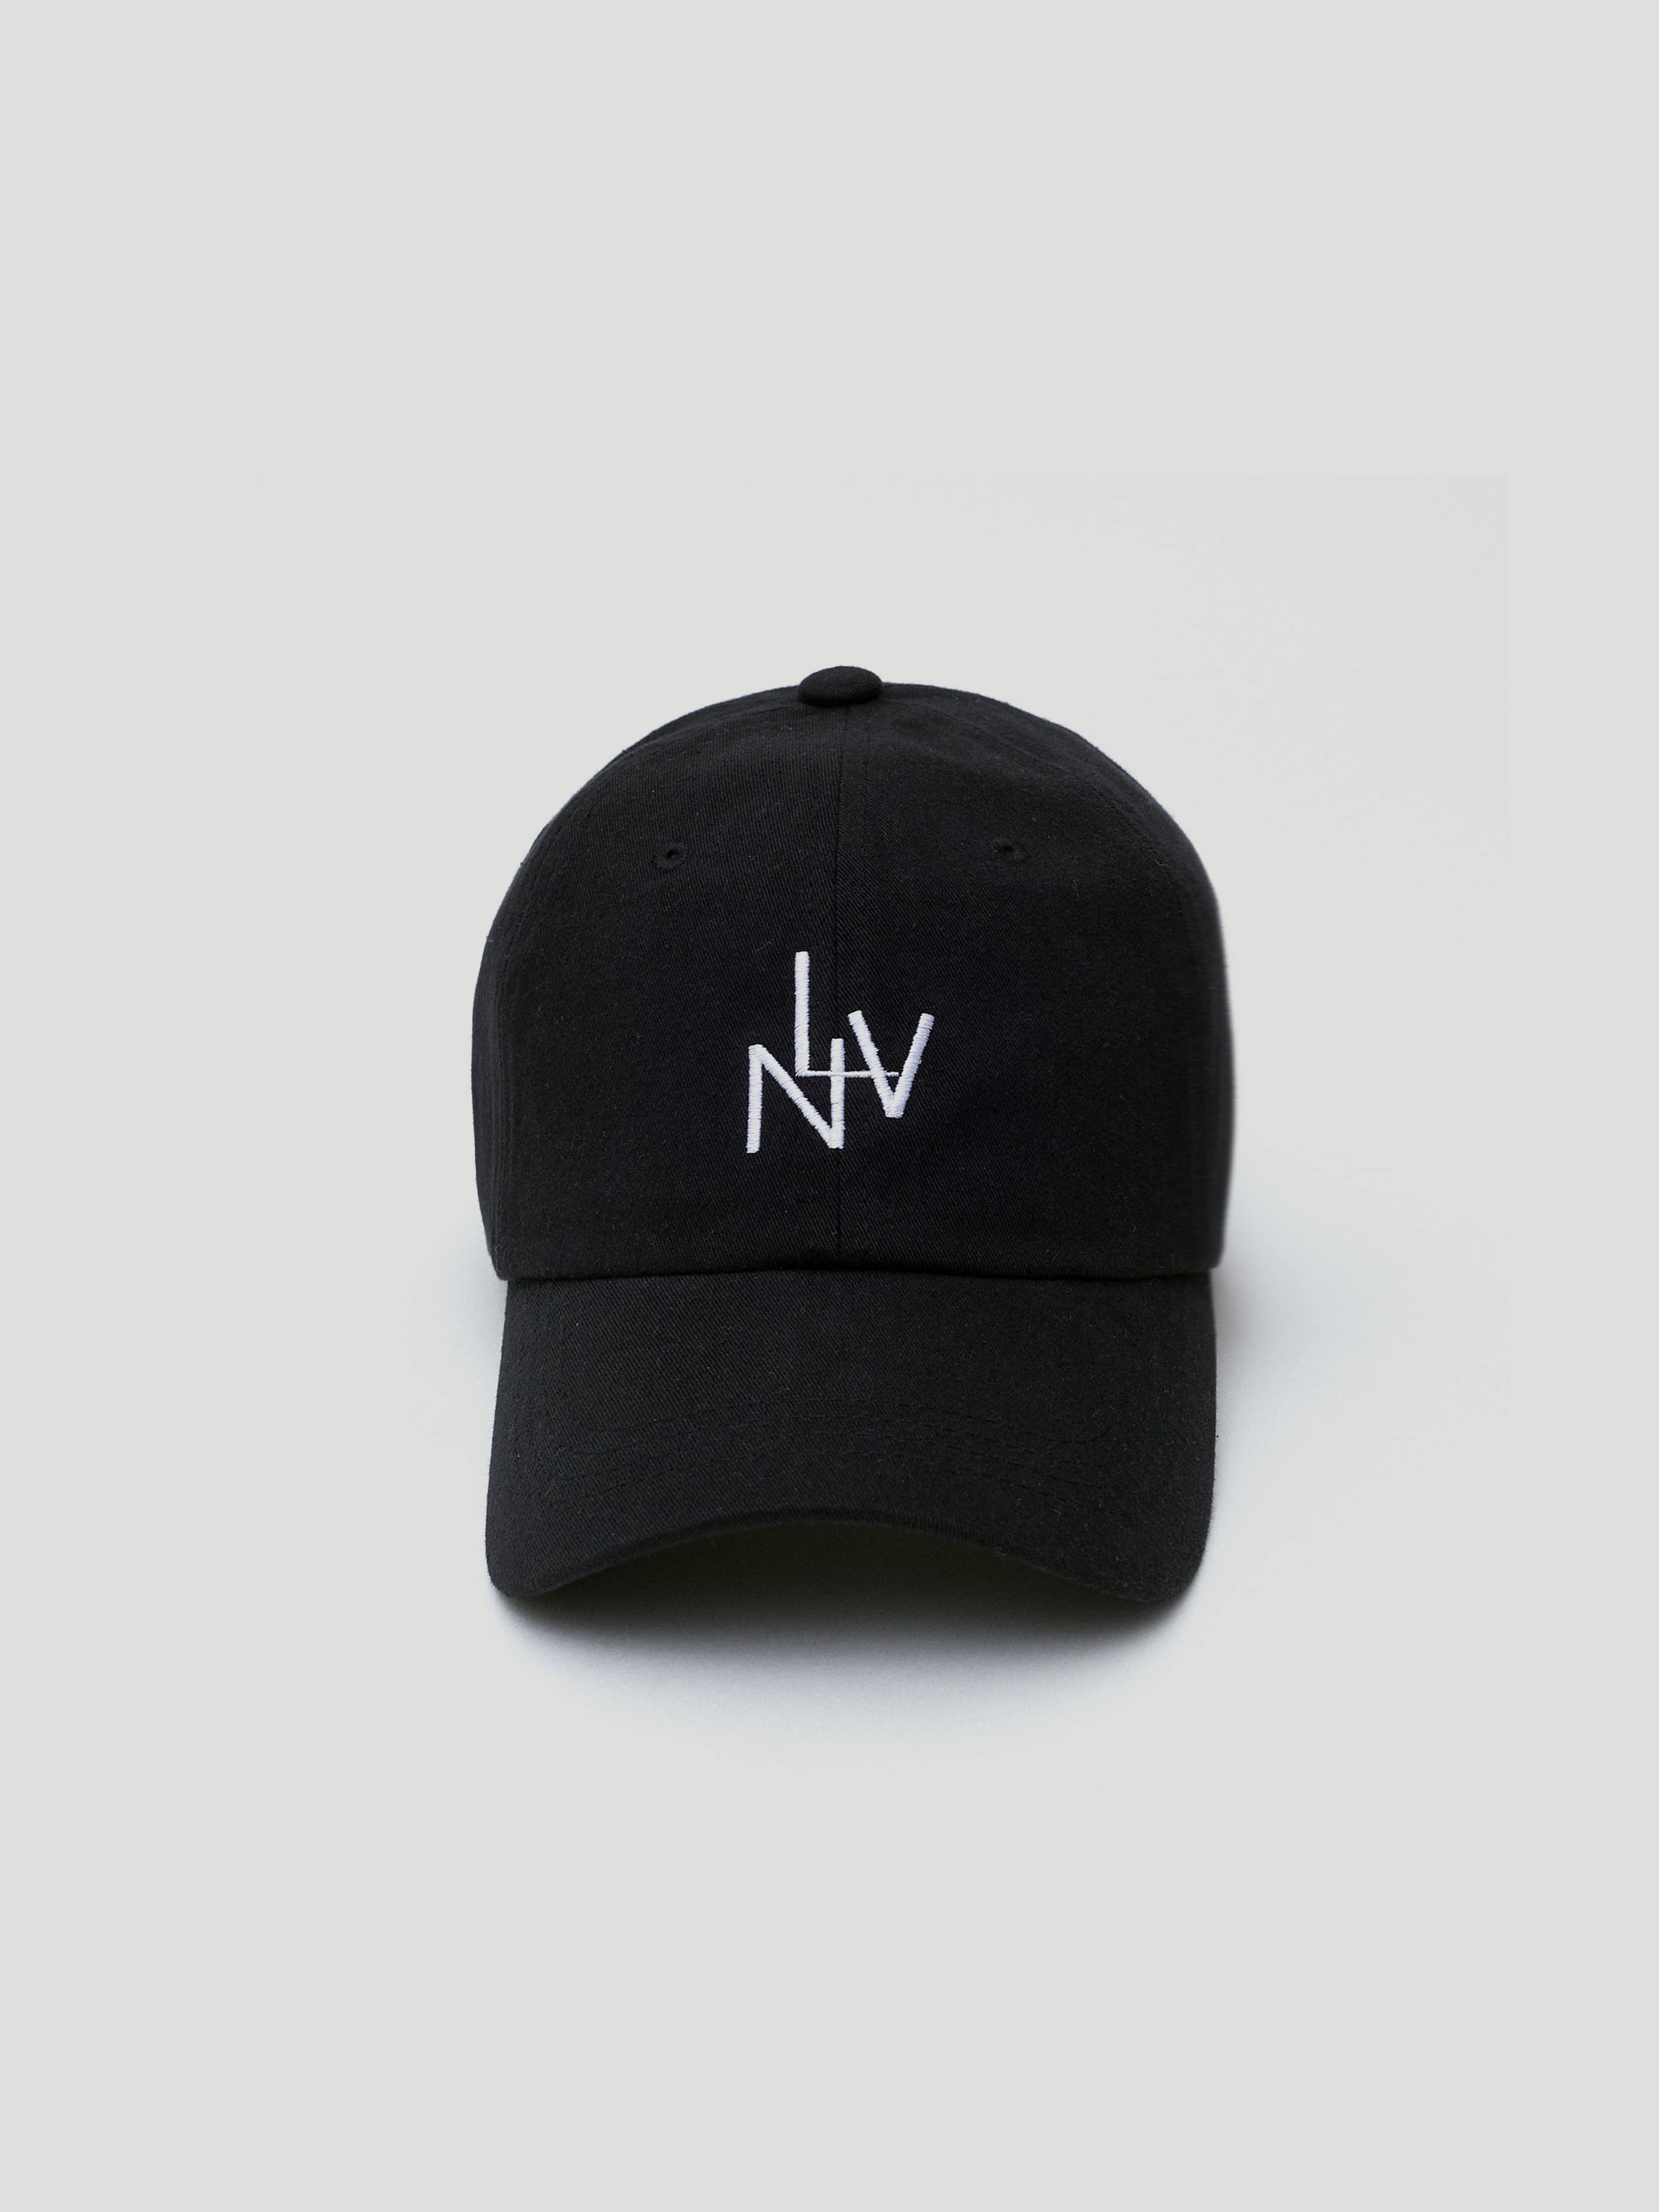 LNV Black Ball cap (블랙)